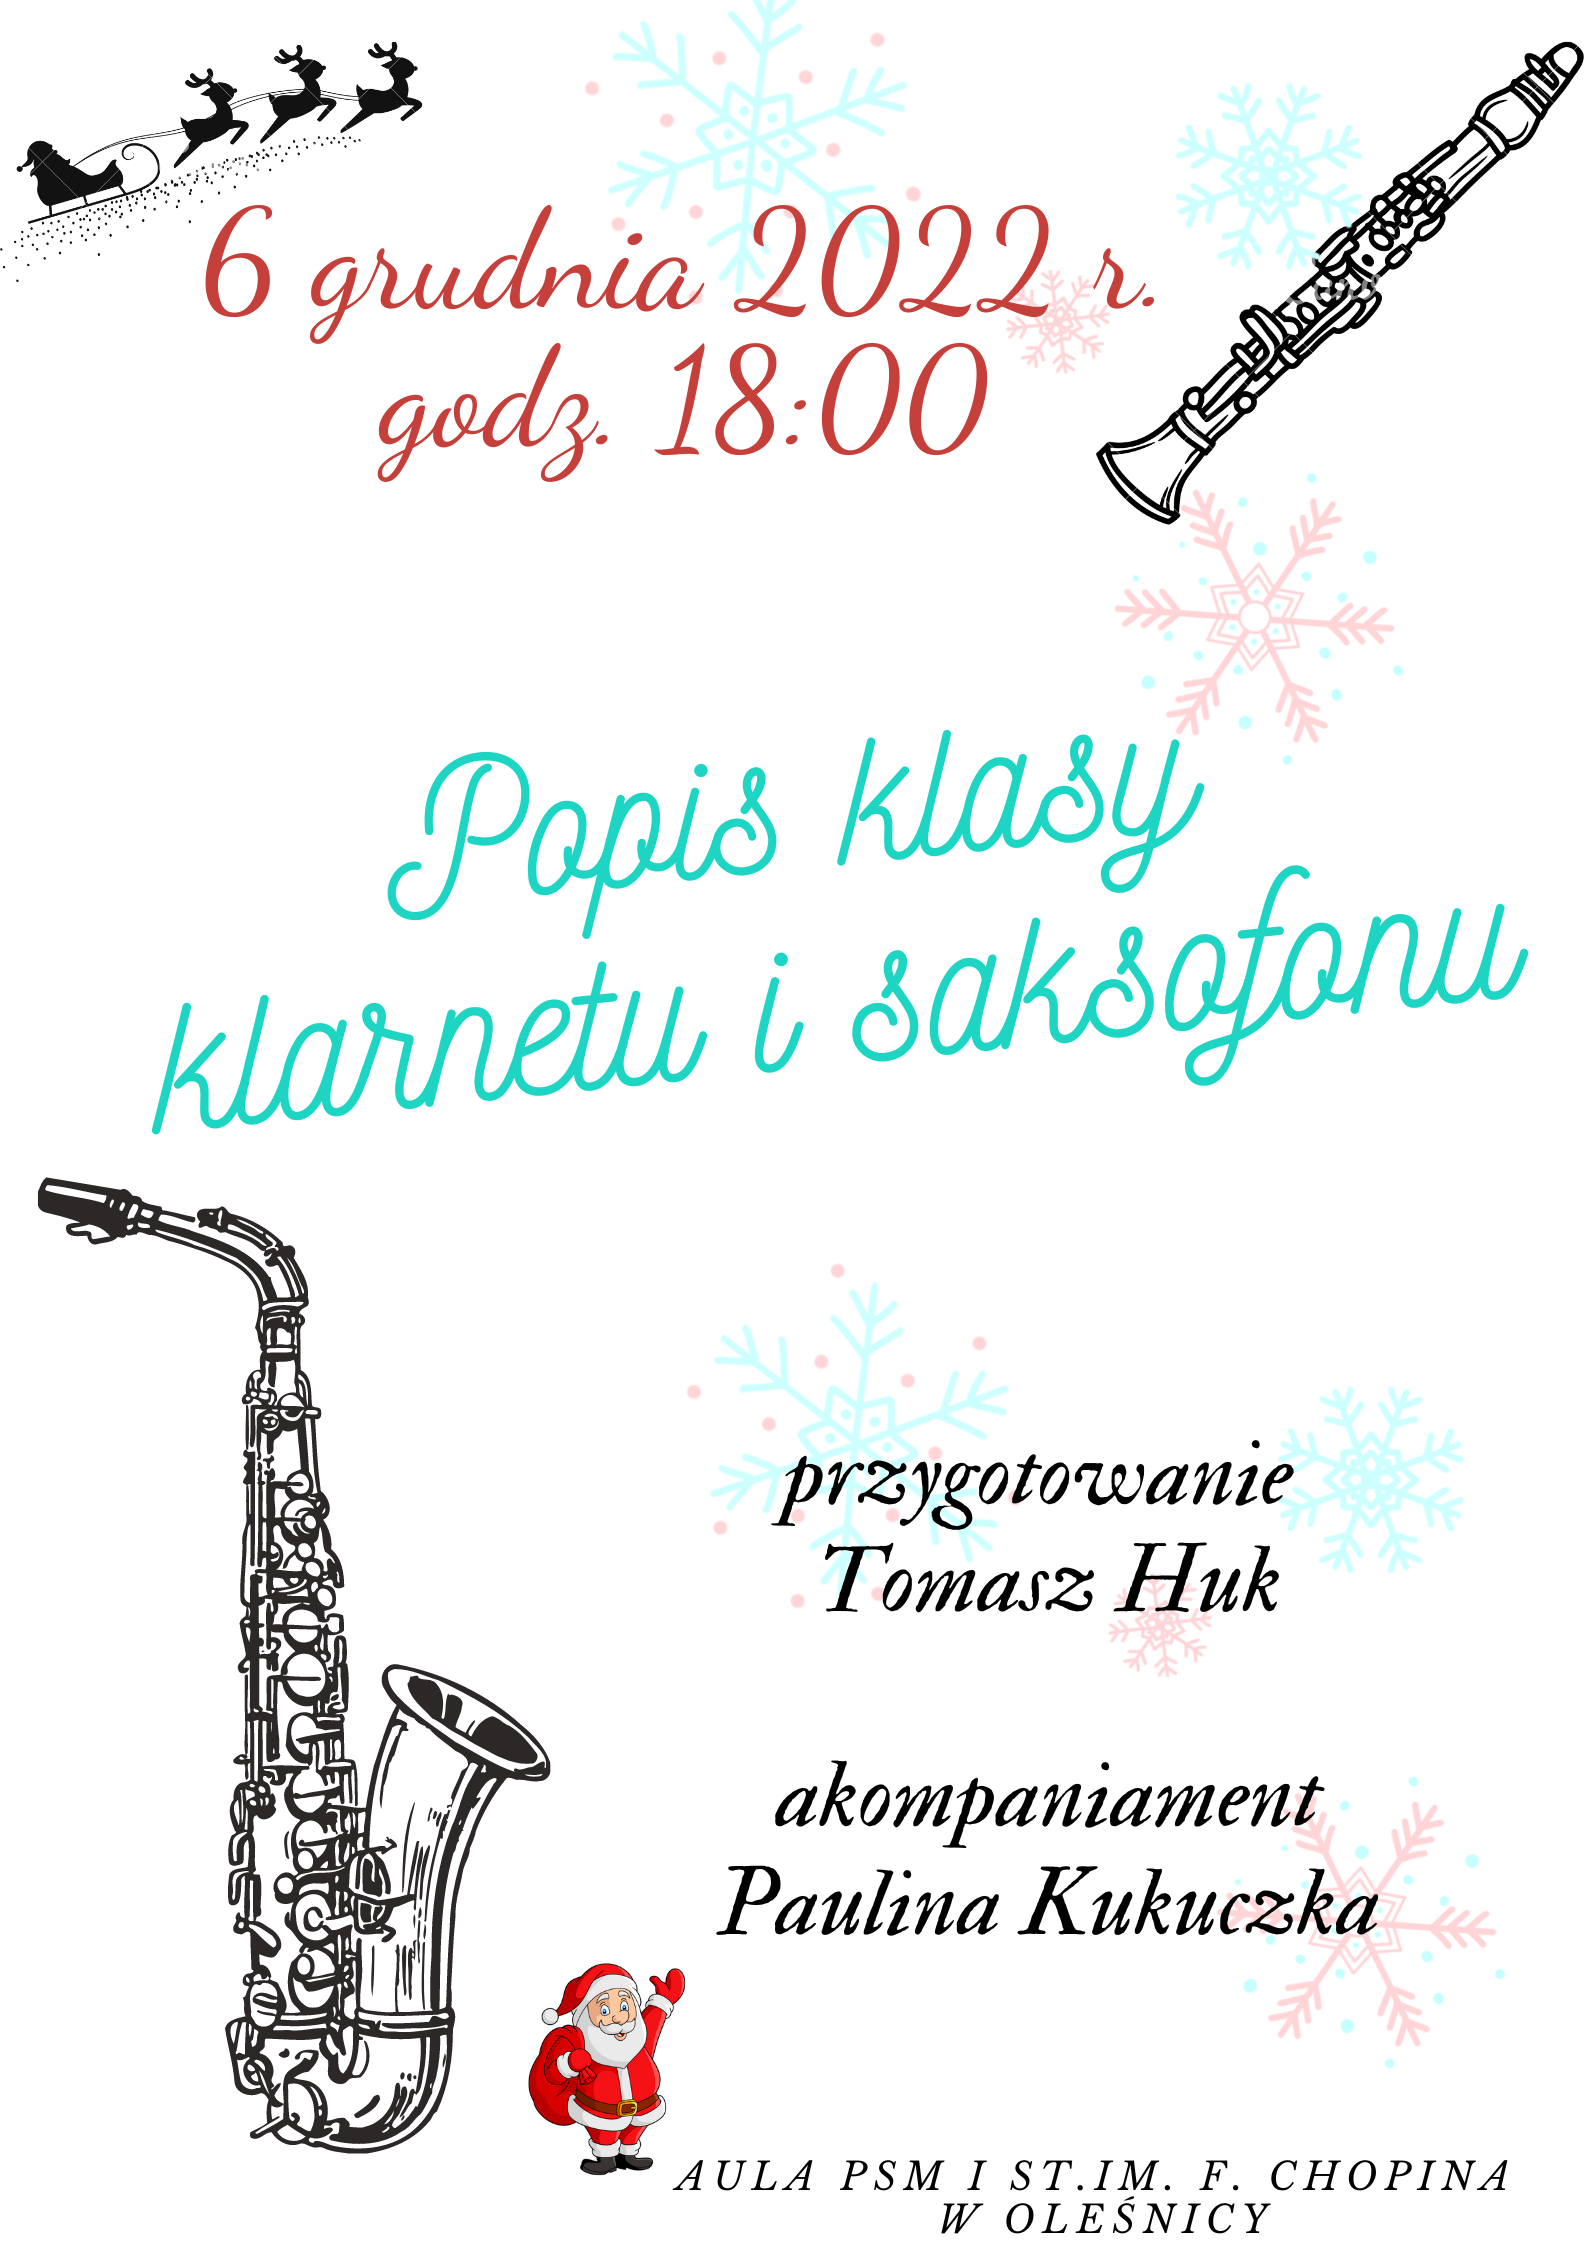 Plakat przedstawia afisz popisu klasy klarnetu i saksofonu Pana Tomasza Huka, akompaniament Pani Paulina Kukuczka w dniu 6 grudnia 2022 r. W tle zimowe elementy: śnieżynki, Mikołaj oraz grafiki przedstawiające klarnet oraz saksofon